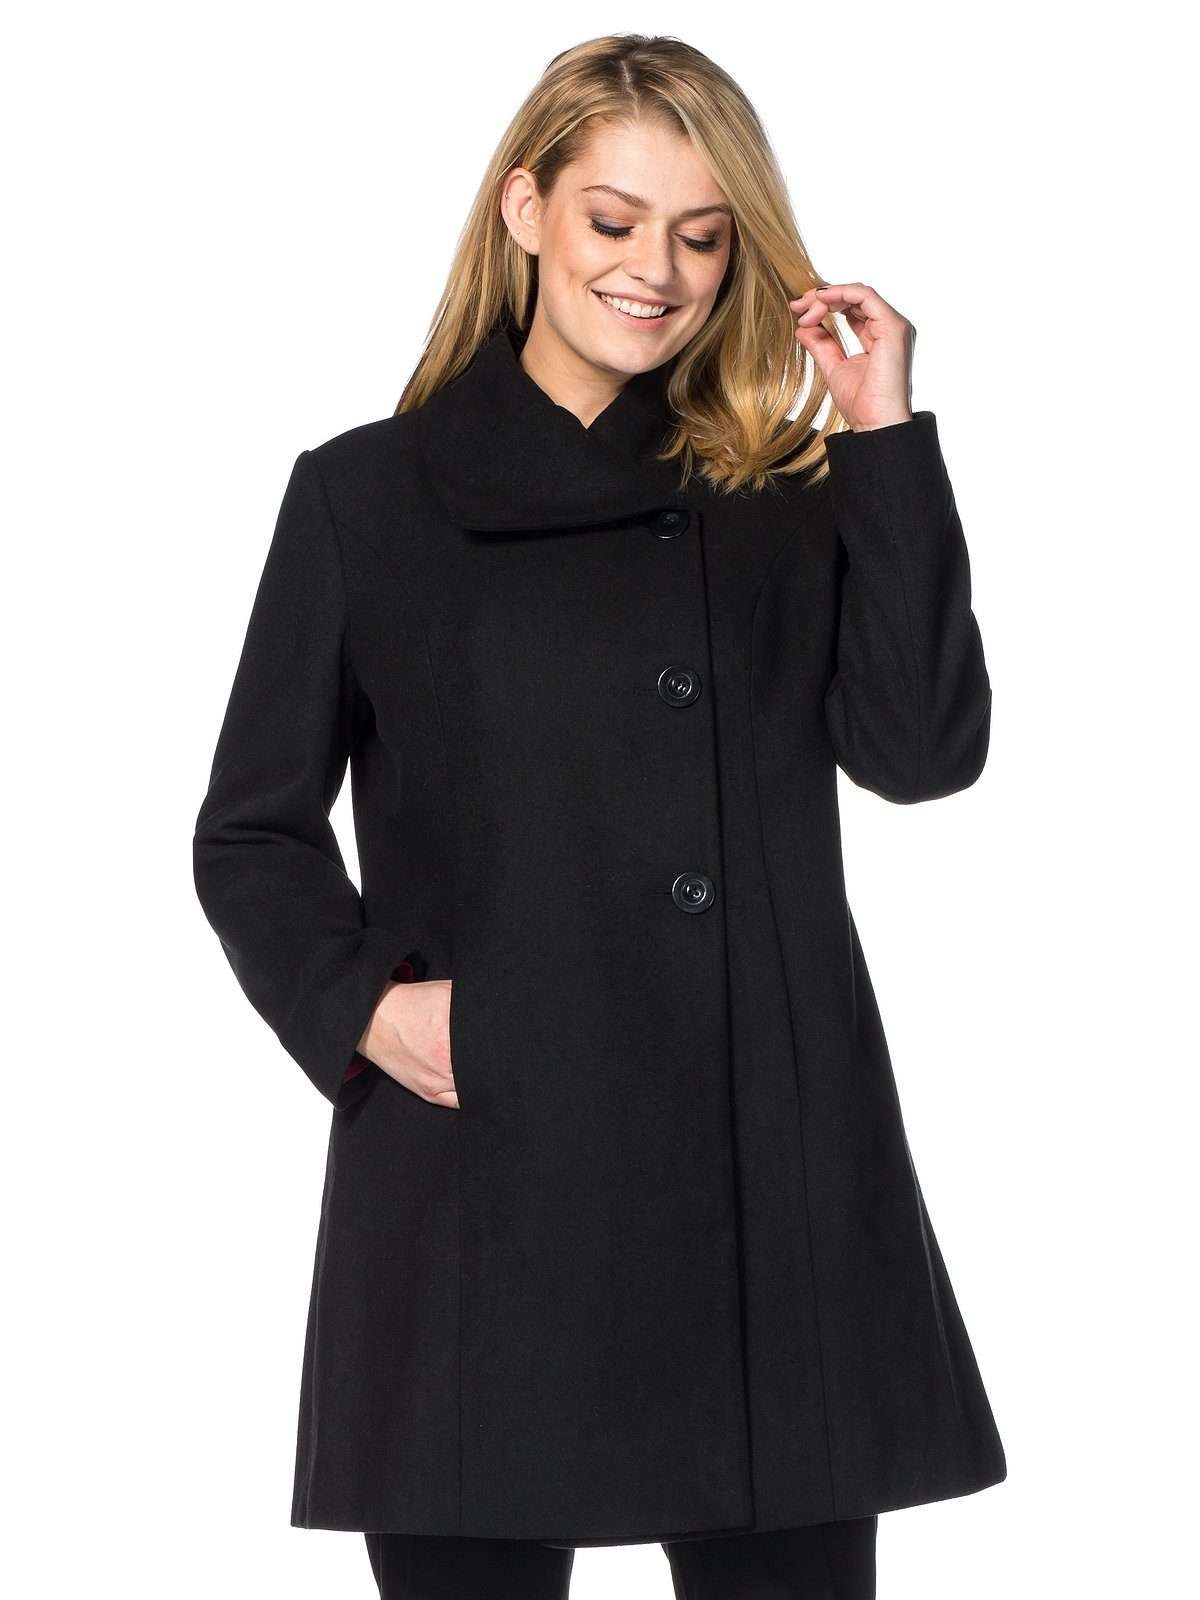 Короткое пальто больших размеров с асимметричным воротником и планкой на пуговицах.